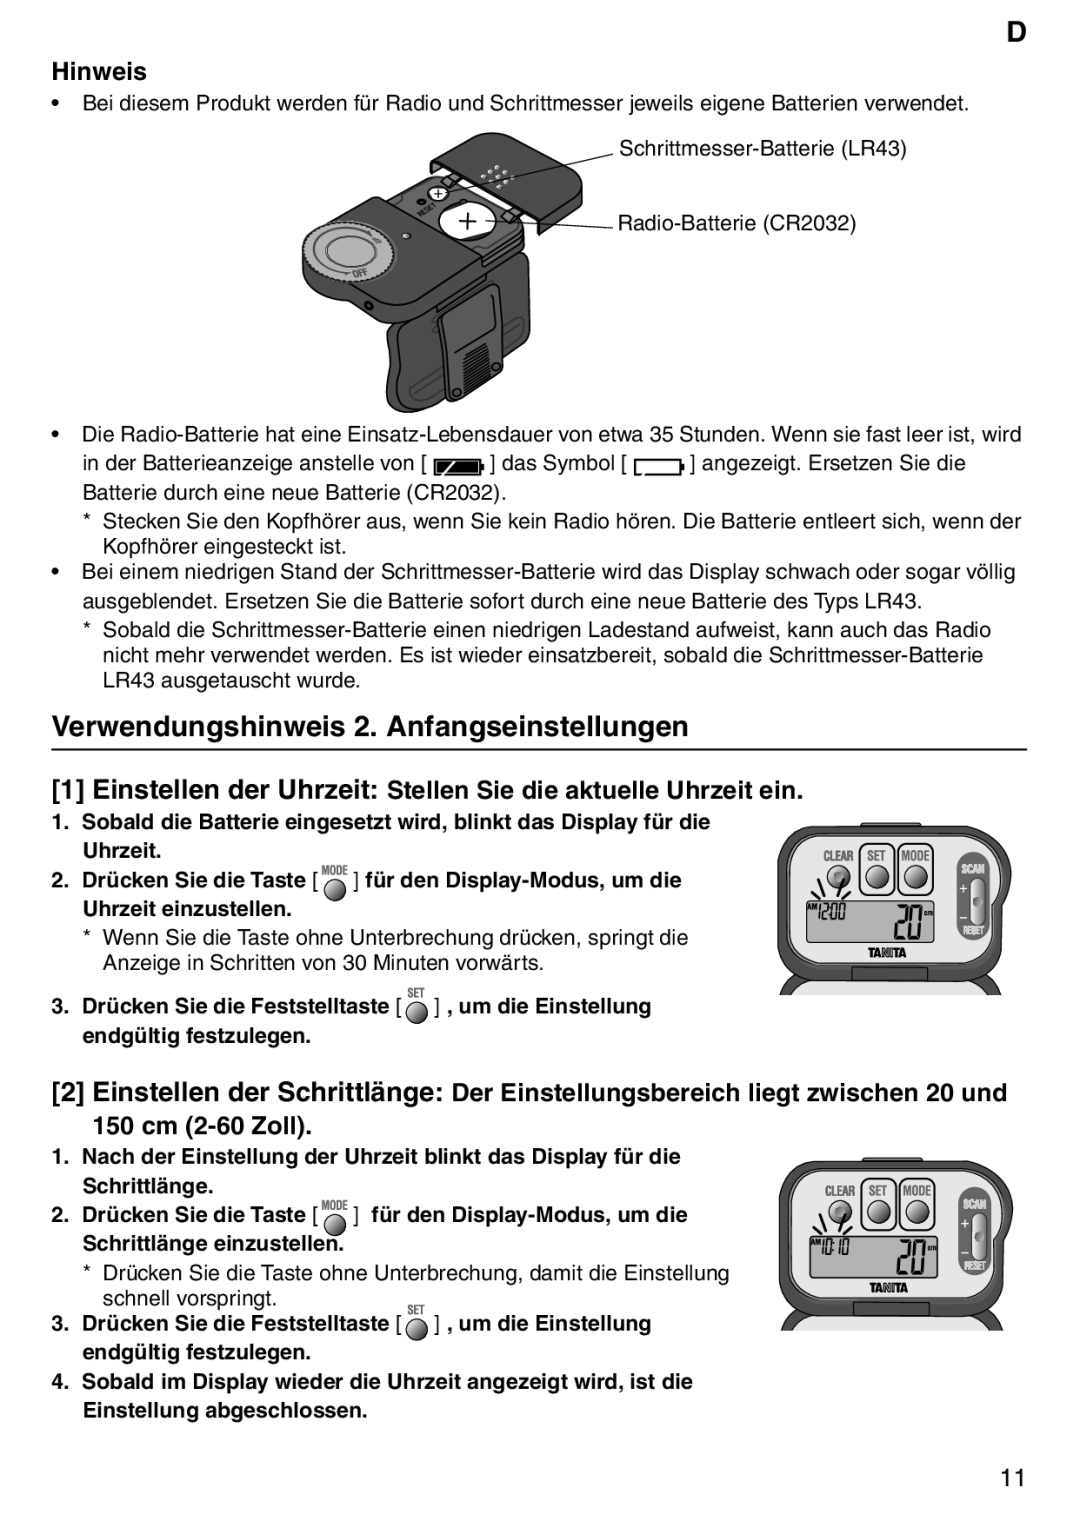 Tanita PD640 instruction manual Verwendungshinweis 2. Anfangseinstellungen, Hinweis, 150 cm 2-60Zoll, Uhrzeit einzustellen 